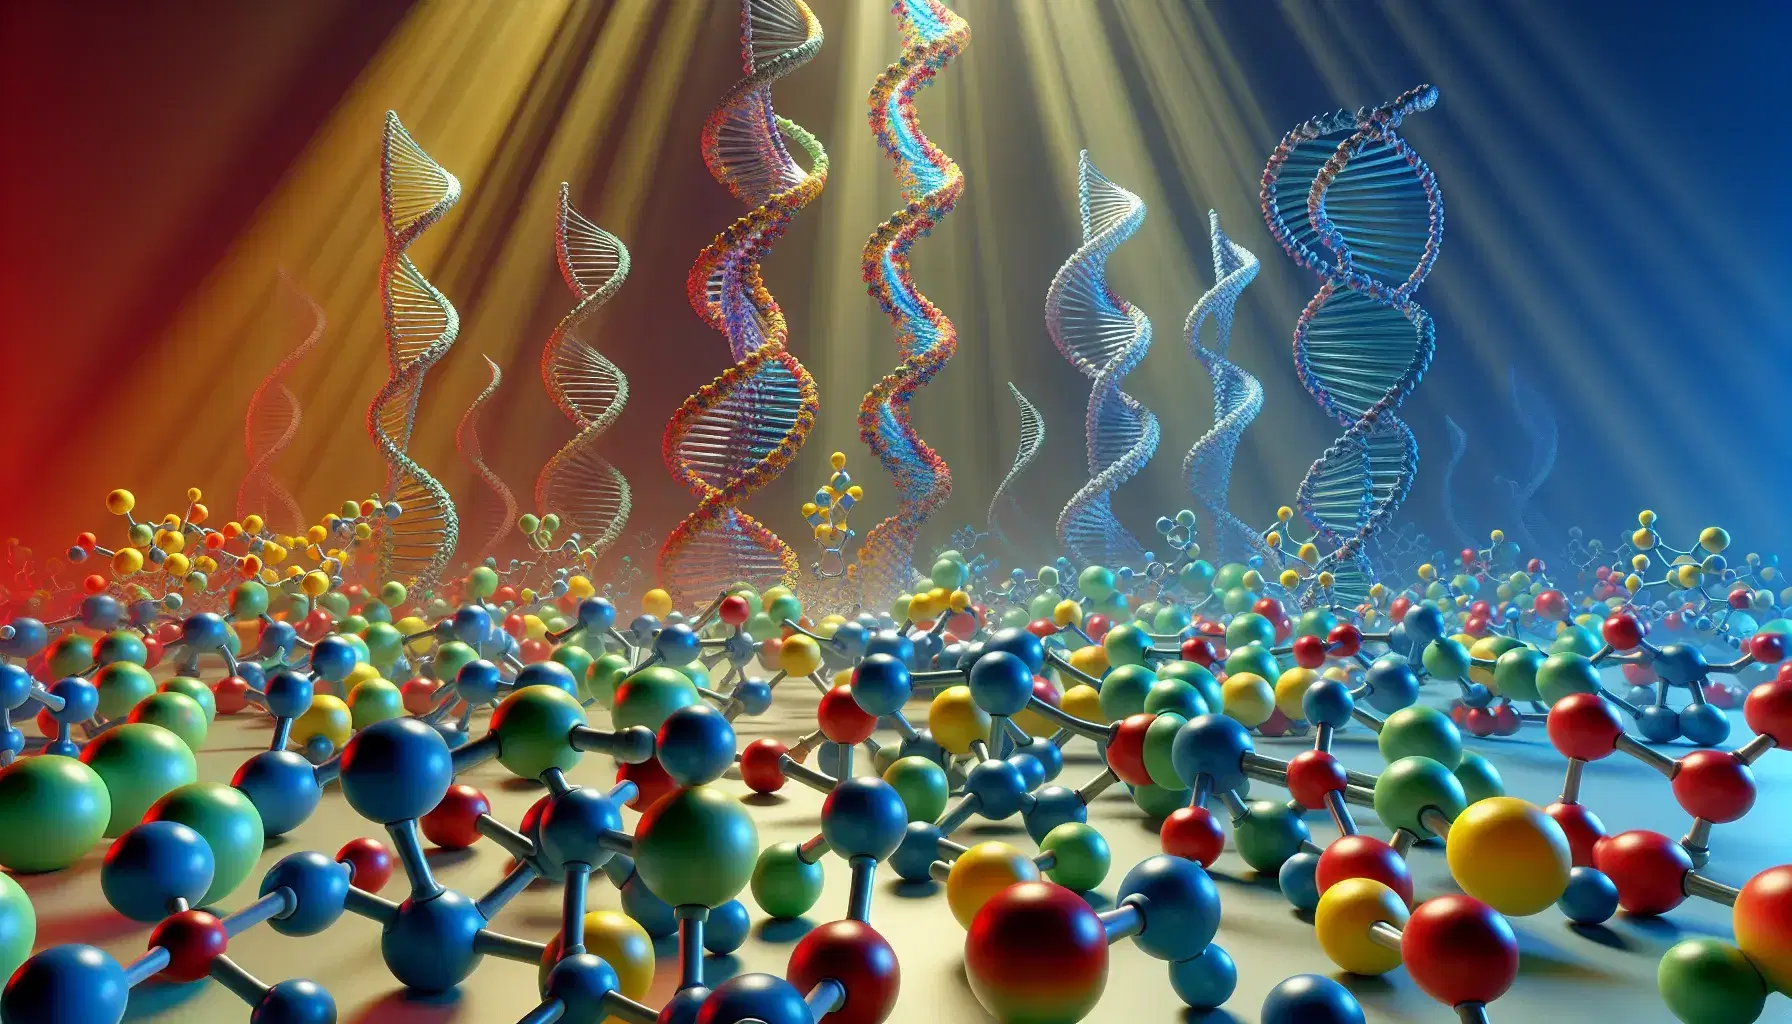 Modelos moleculares tridimensionales en colores vivos con estructura de doble hélice al fondo, representando conceptos de biología molecular.